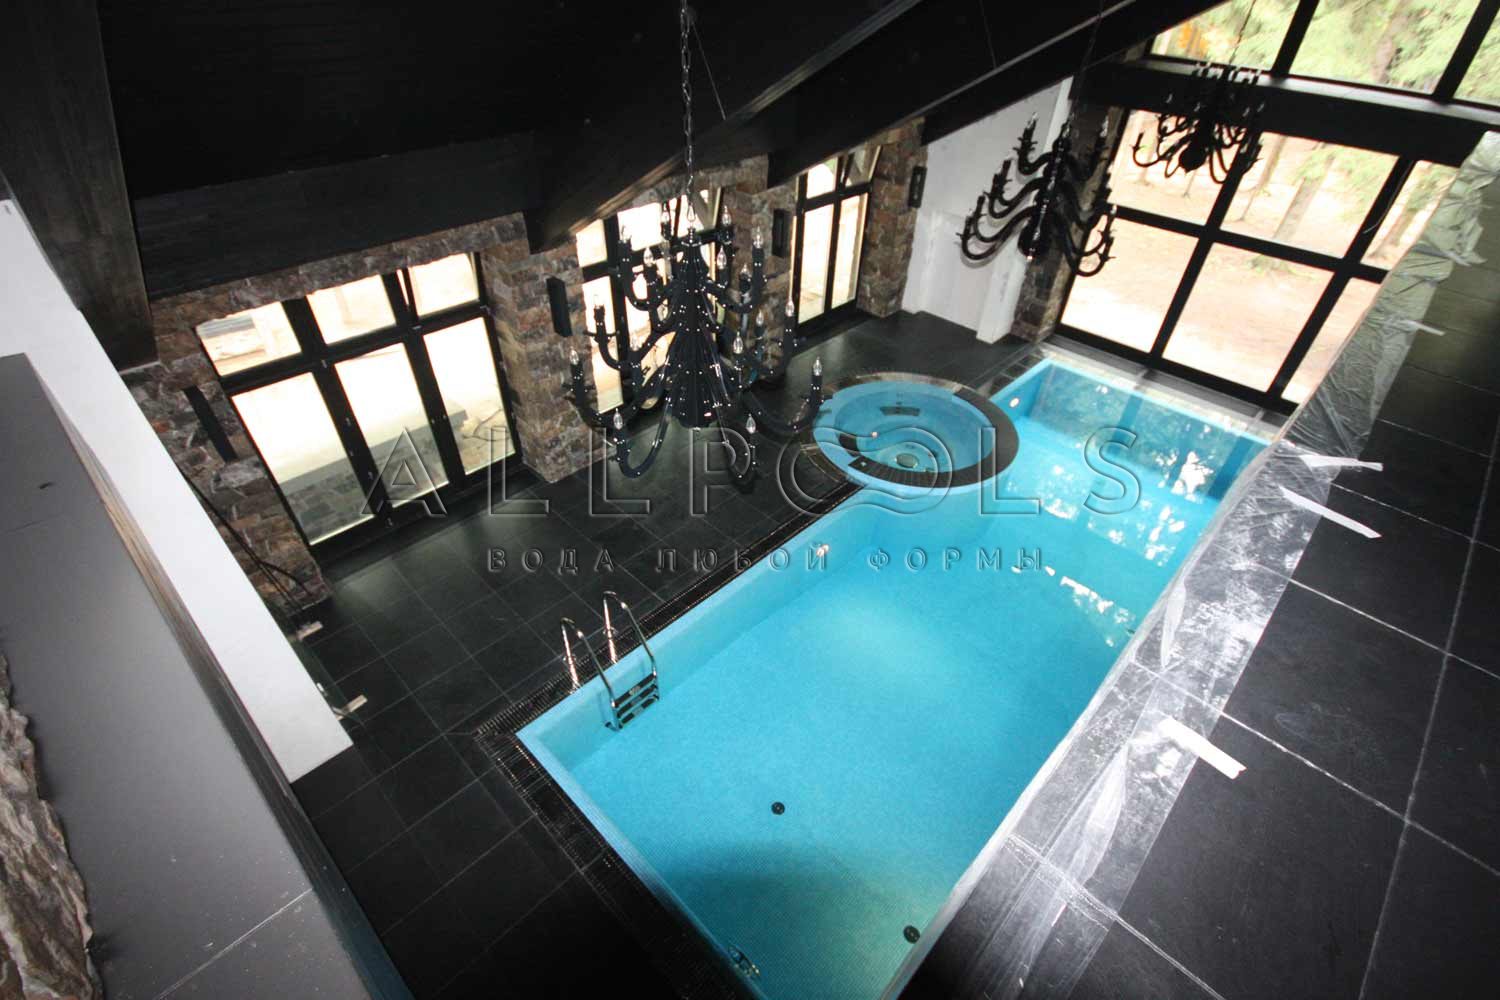 Обзорное фото бассейна с лестницей и джакузи в частном доме